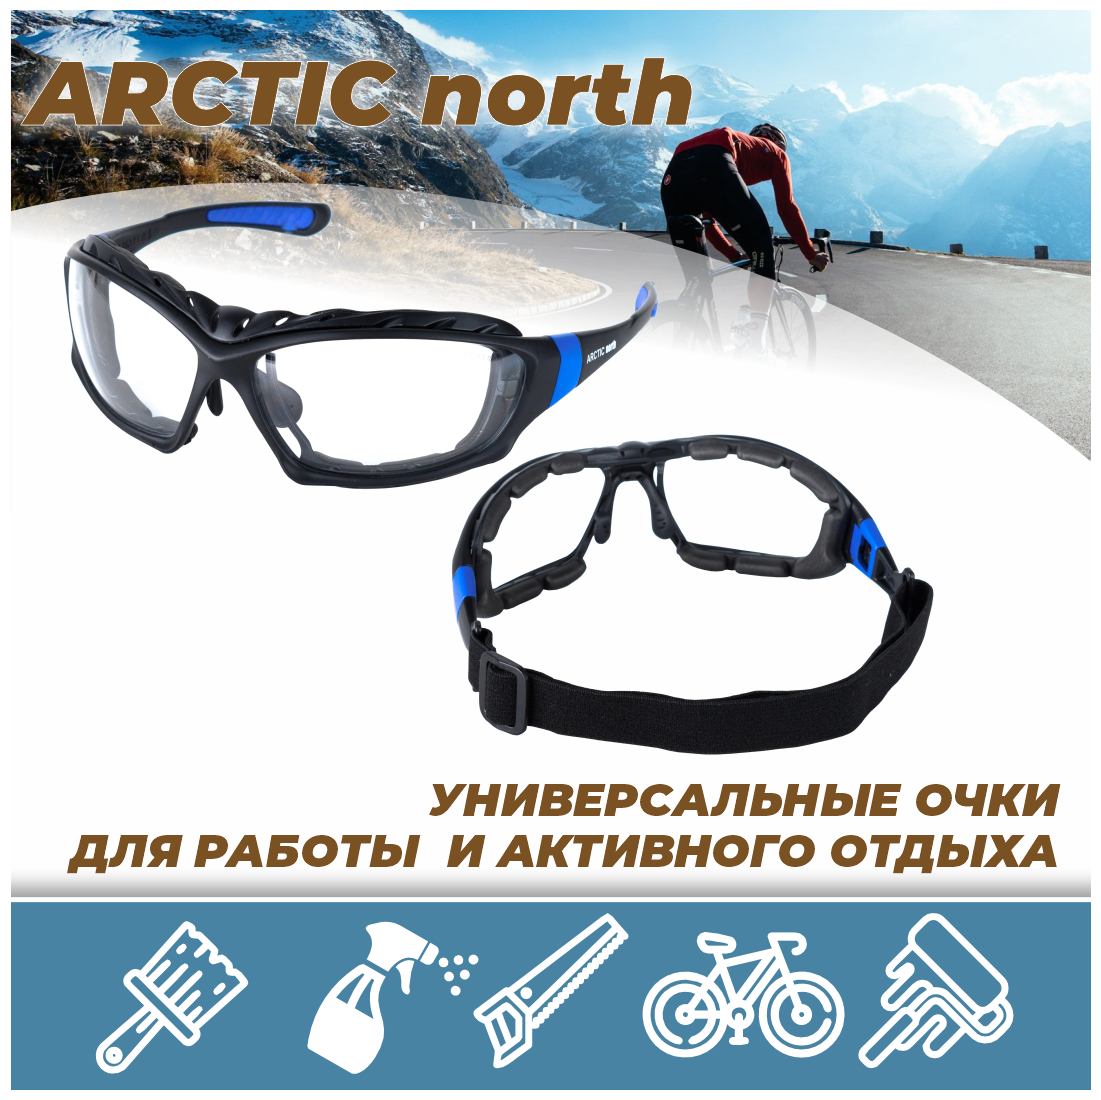 Защитные очки / строительные / рабочие / тактические РОСОМЗ ARCTIC north прозрачные, арт. 38630